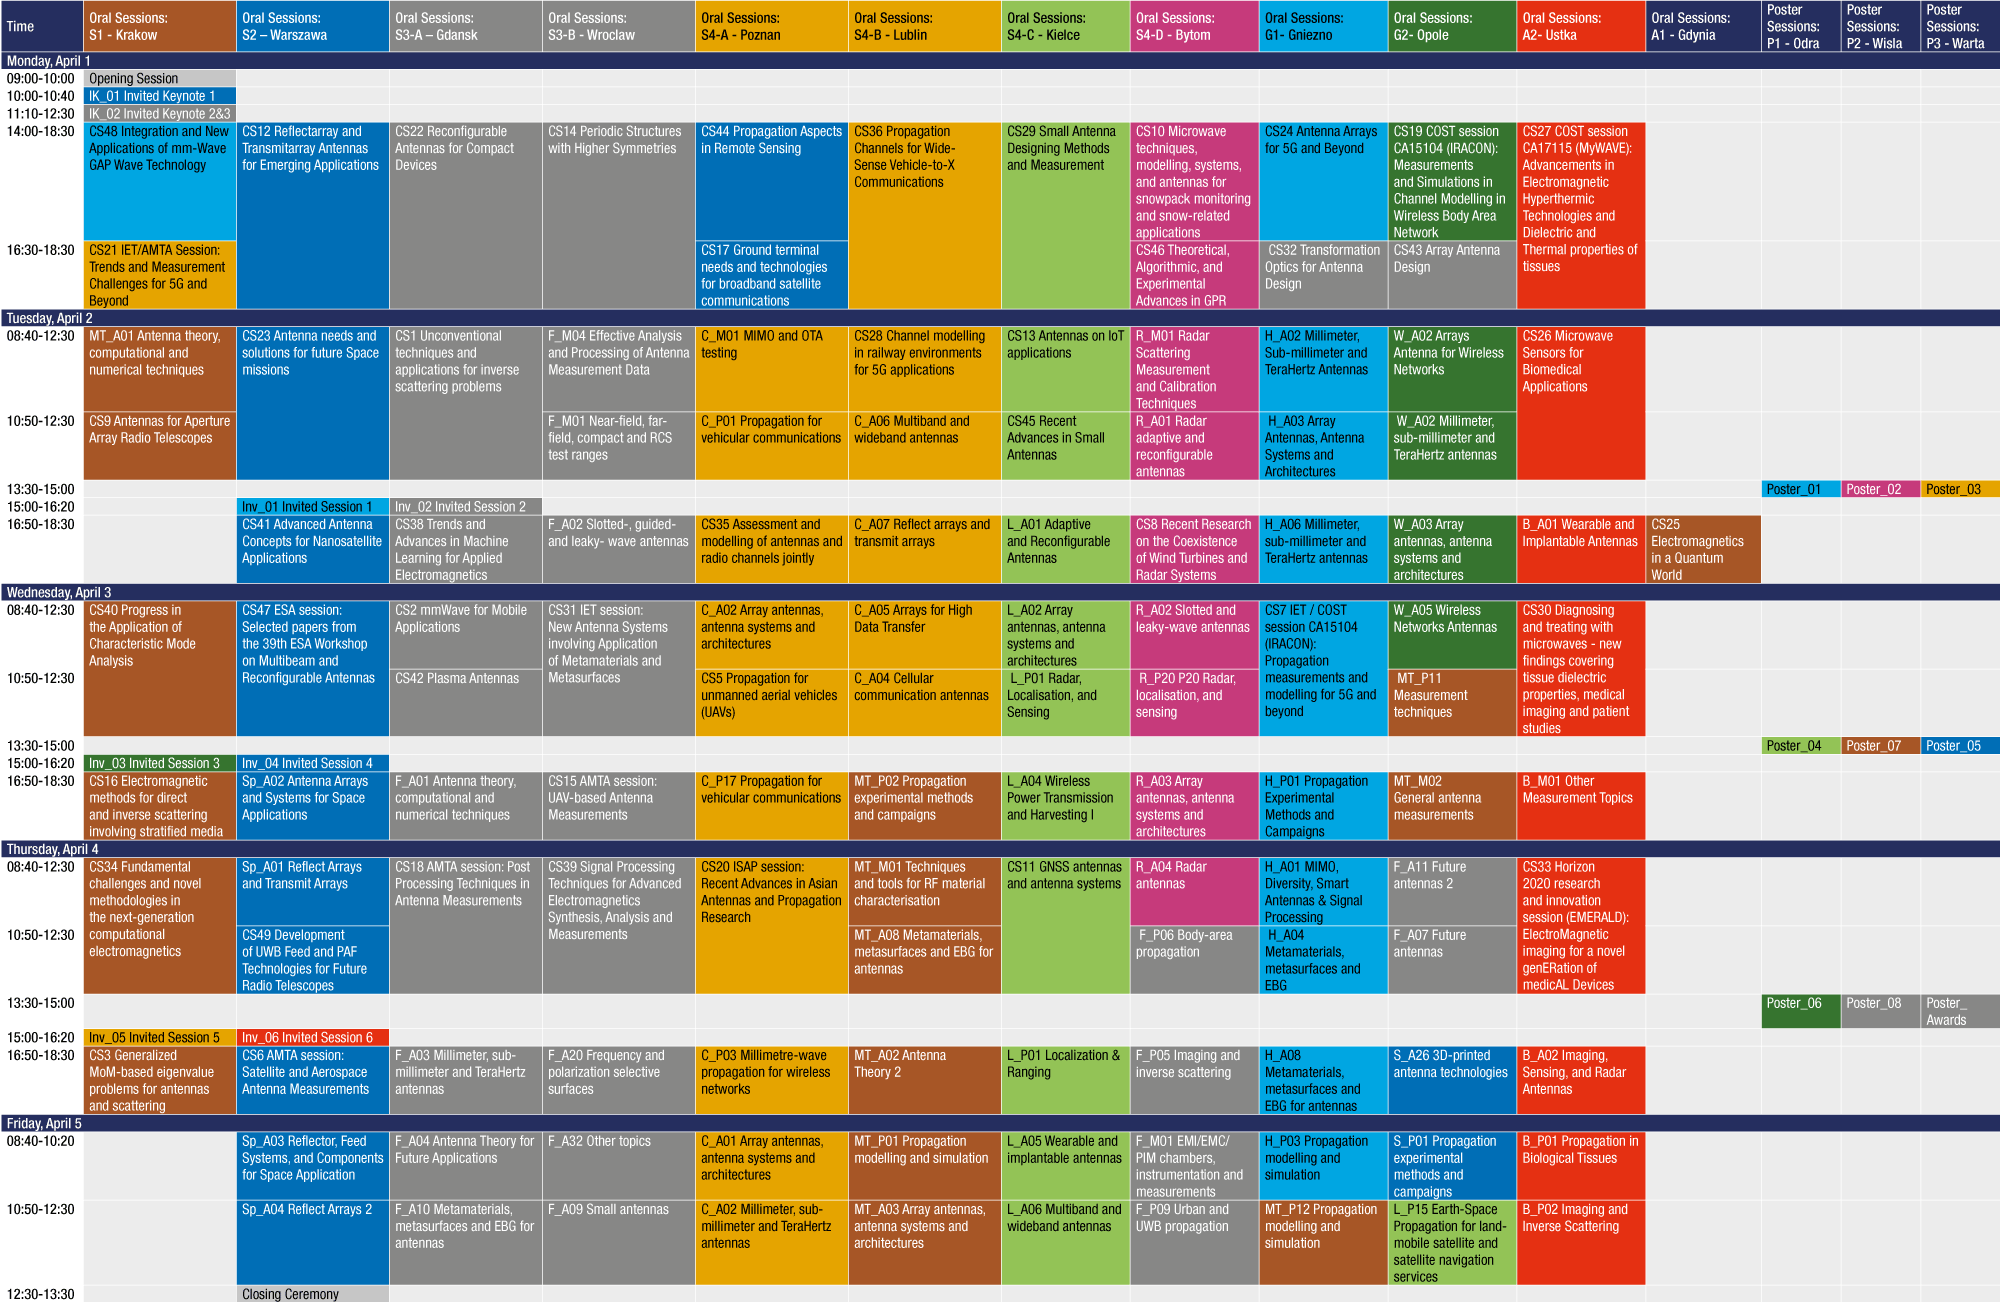 EuCAP2019-Scientific programme overview